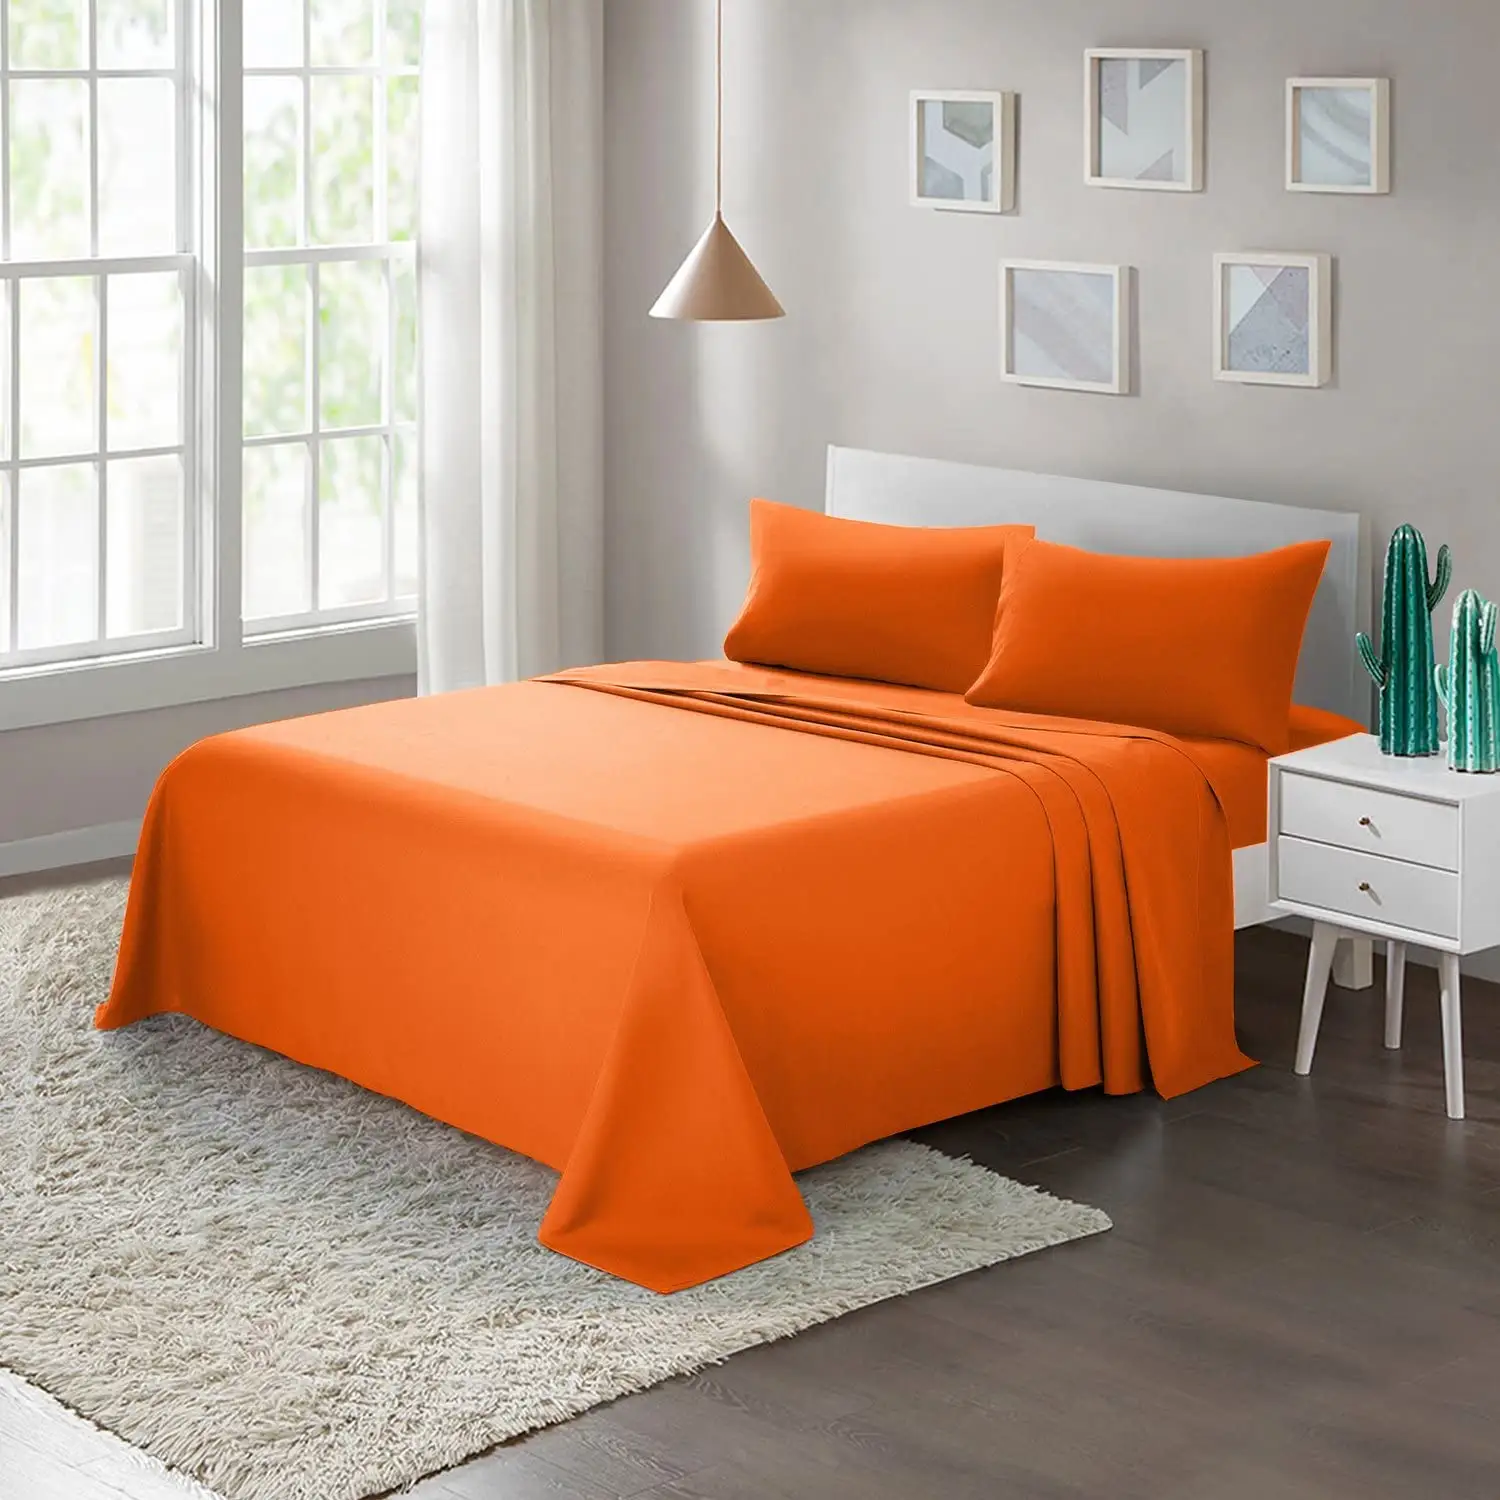 Orange Bed Sheet Set 4-Piece with Deep Pocket Brushed Microfiber 1800 Bedding